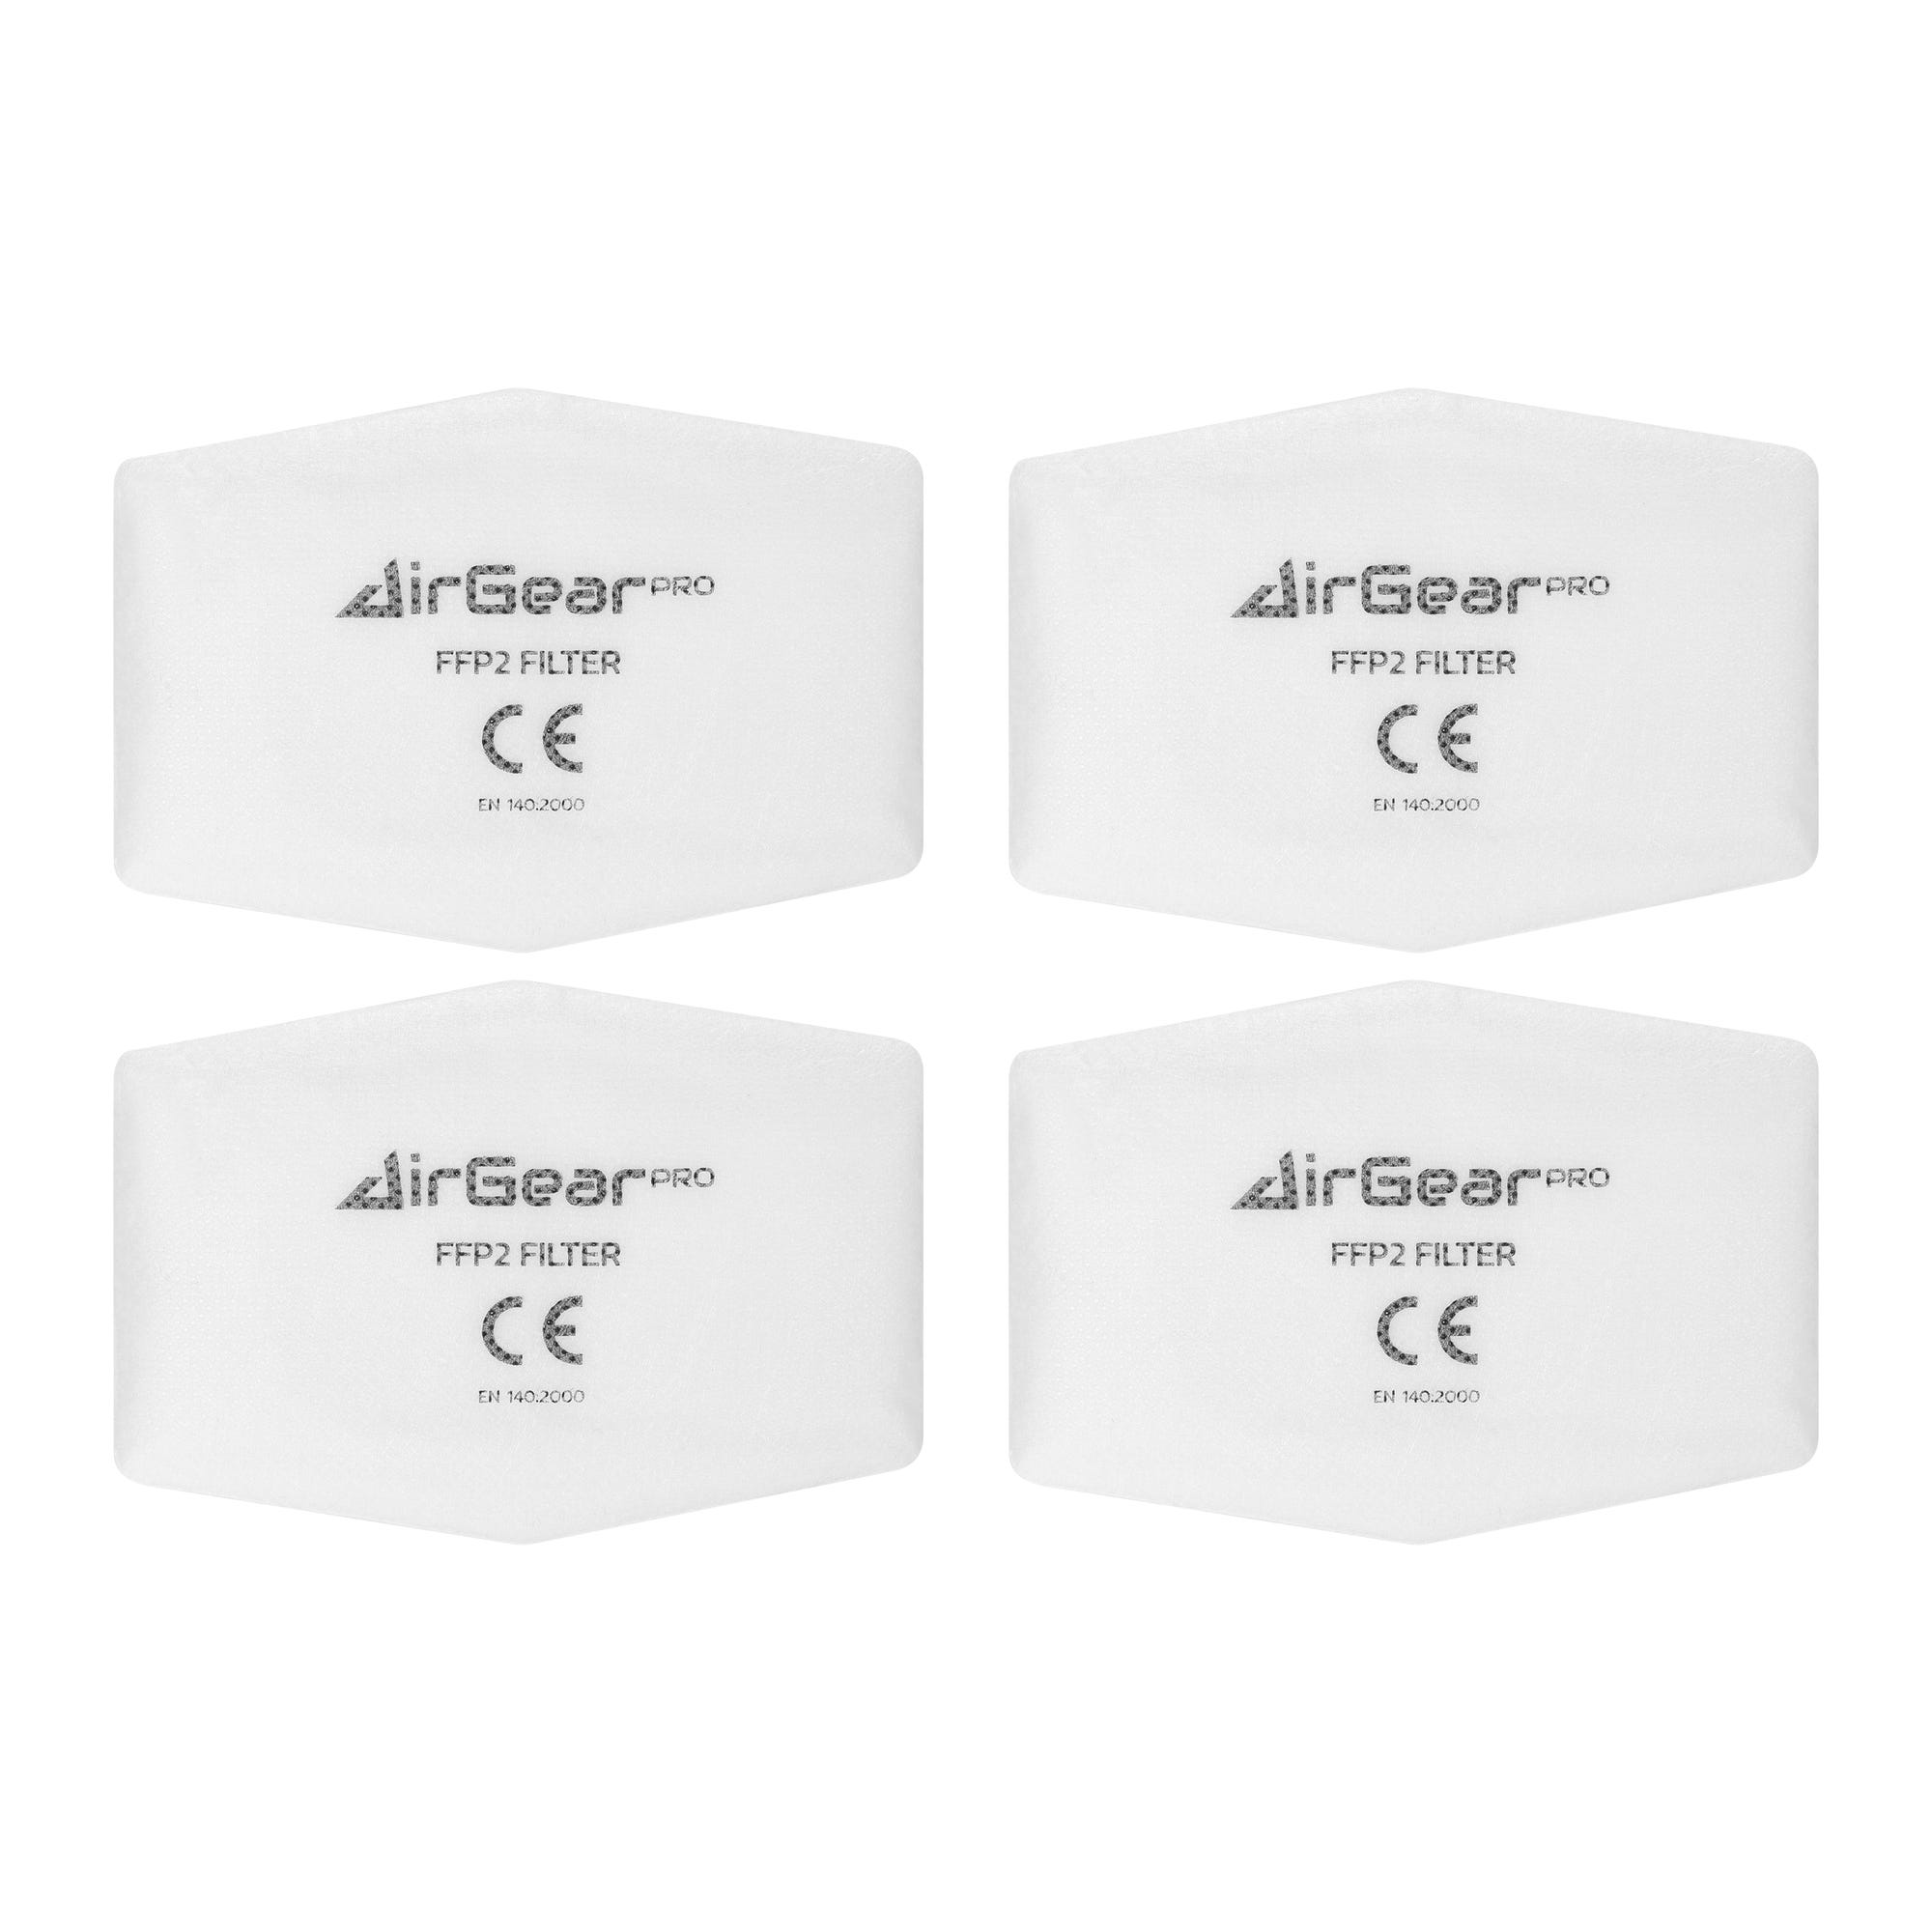 AirGearPro F-200 Filtres pour Masque de Protection Respiratoire D-200, Réutilisable, Anti poussière 0